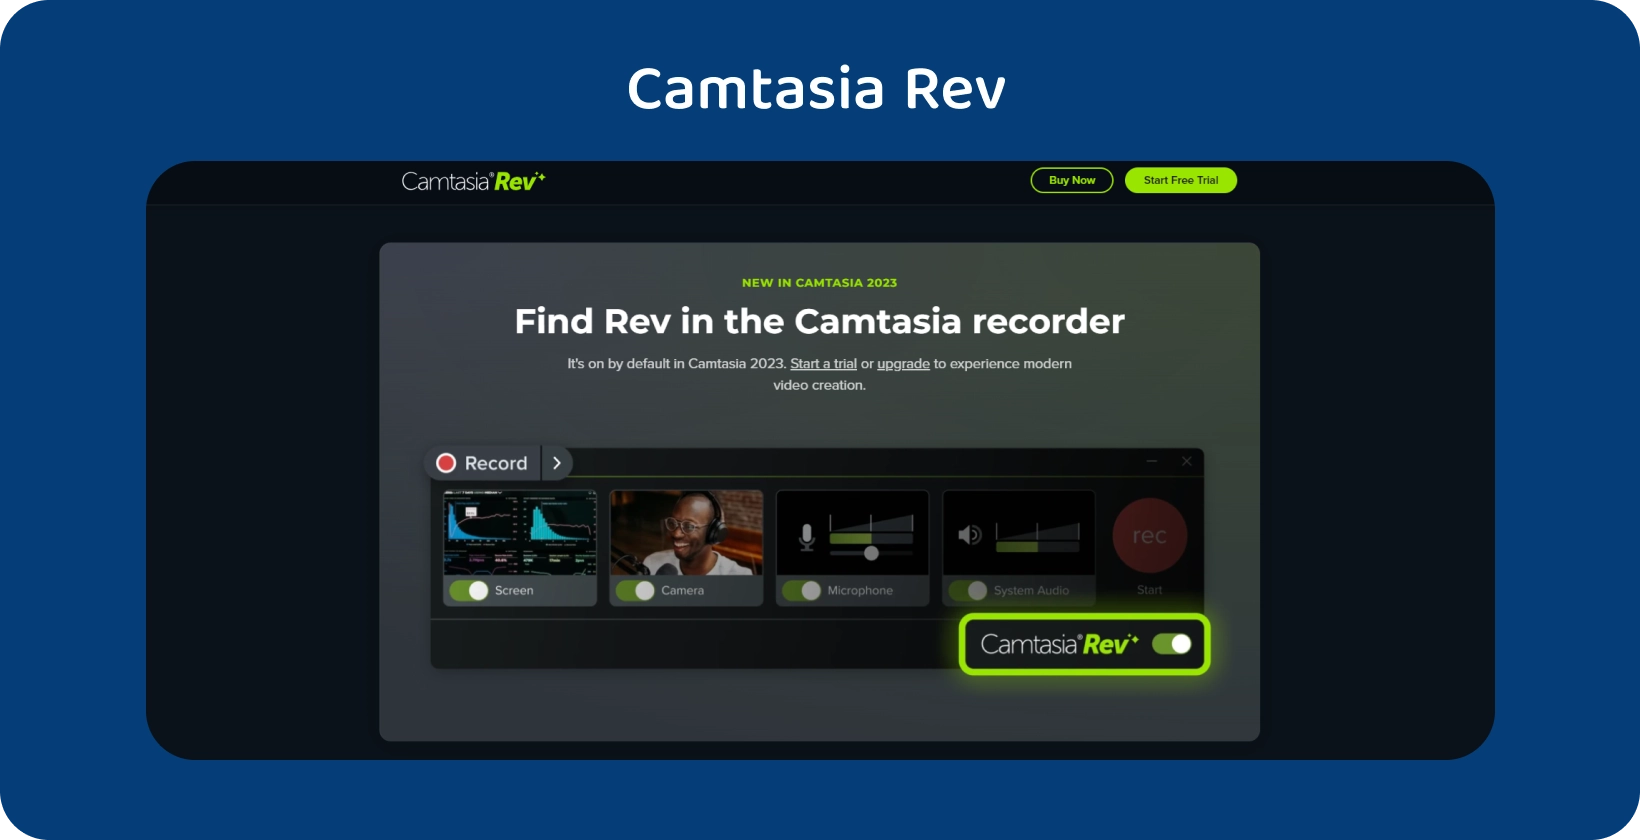 Camtasia Rev hjemmesidebanner, som viser AI-assisterte videoopprettingsverktøy for forbedret videoproduksjon.